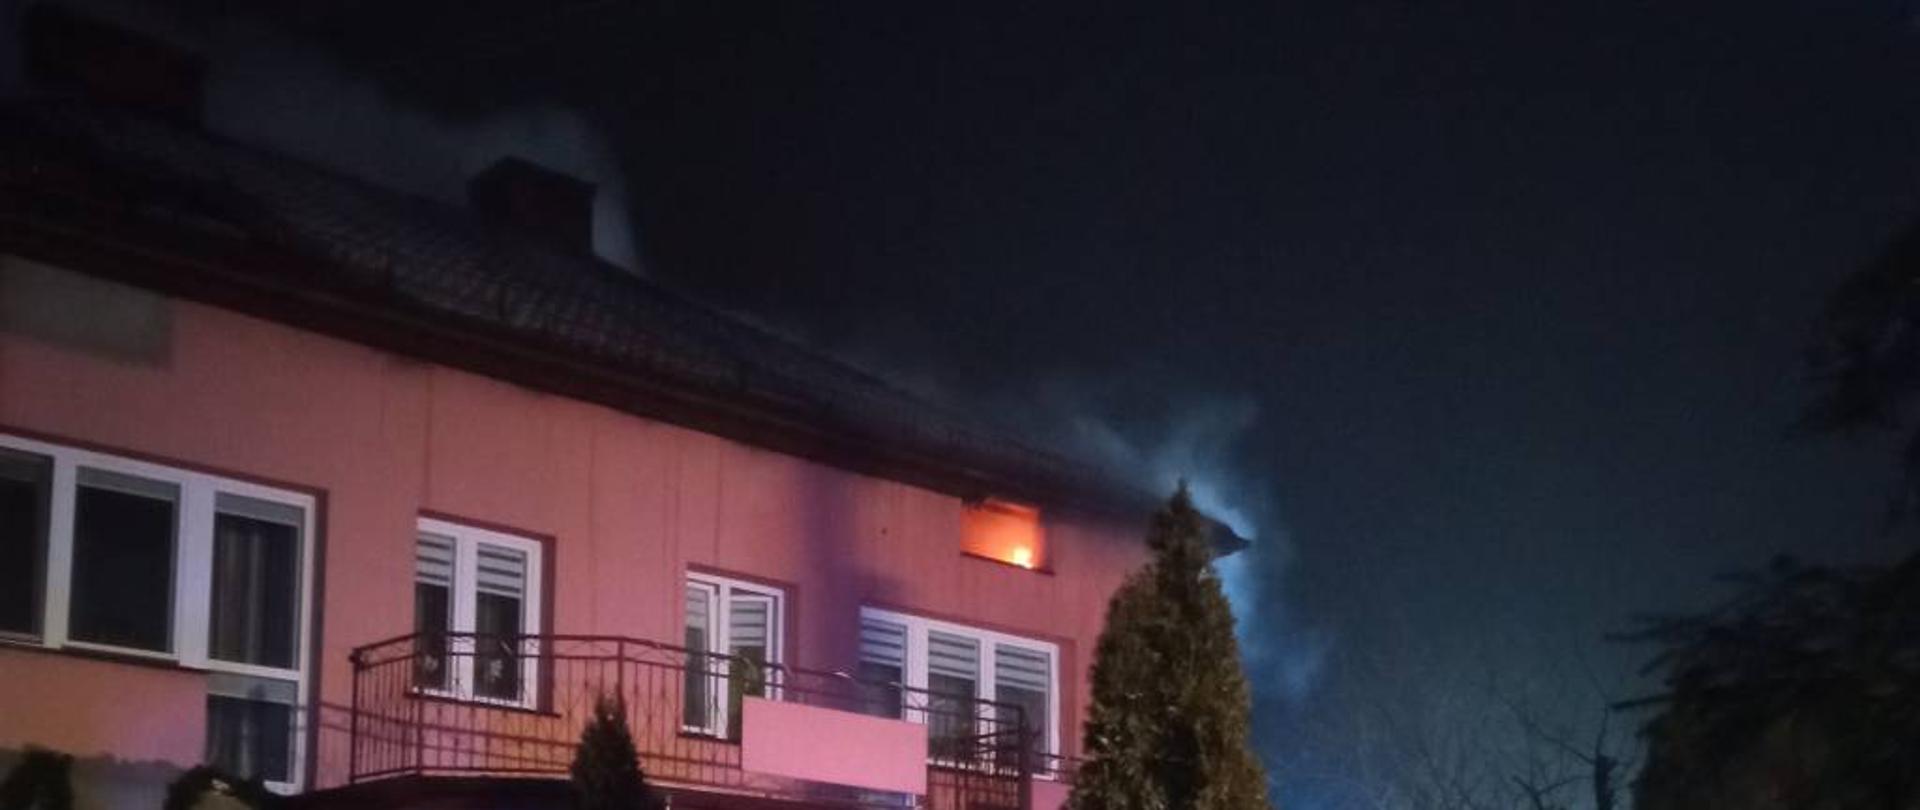 Zdjęcie przedstawia dom jednorodzinny, dwukondygnacyjny z poddasza którego wydobywa się szary dym. W jednym z okien na poddaszu widać płomienie. Zdjęcie wykonano w pogodną, zimową noc.